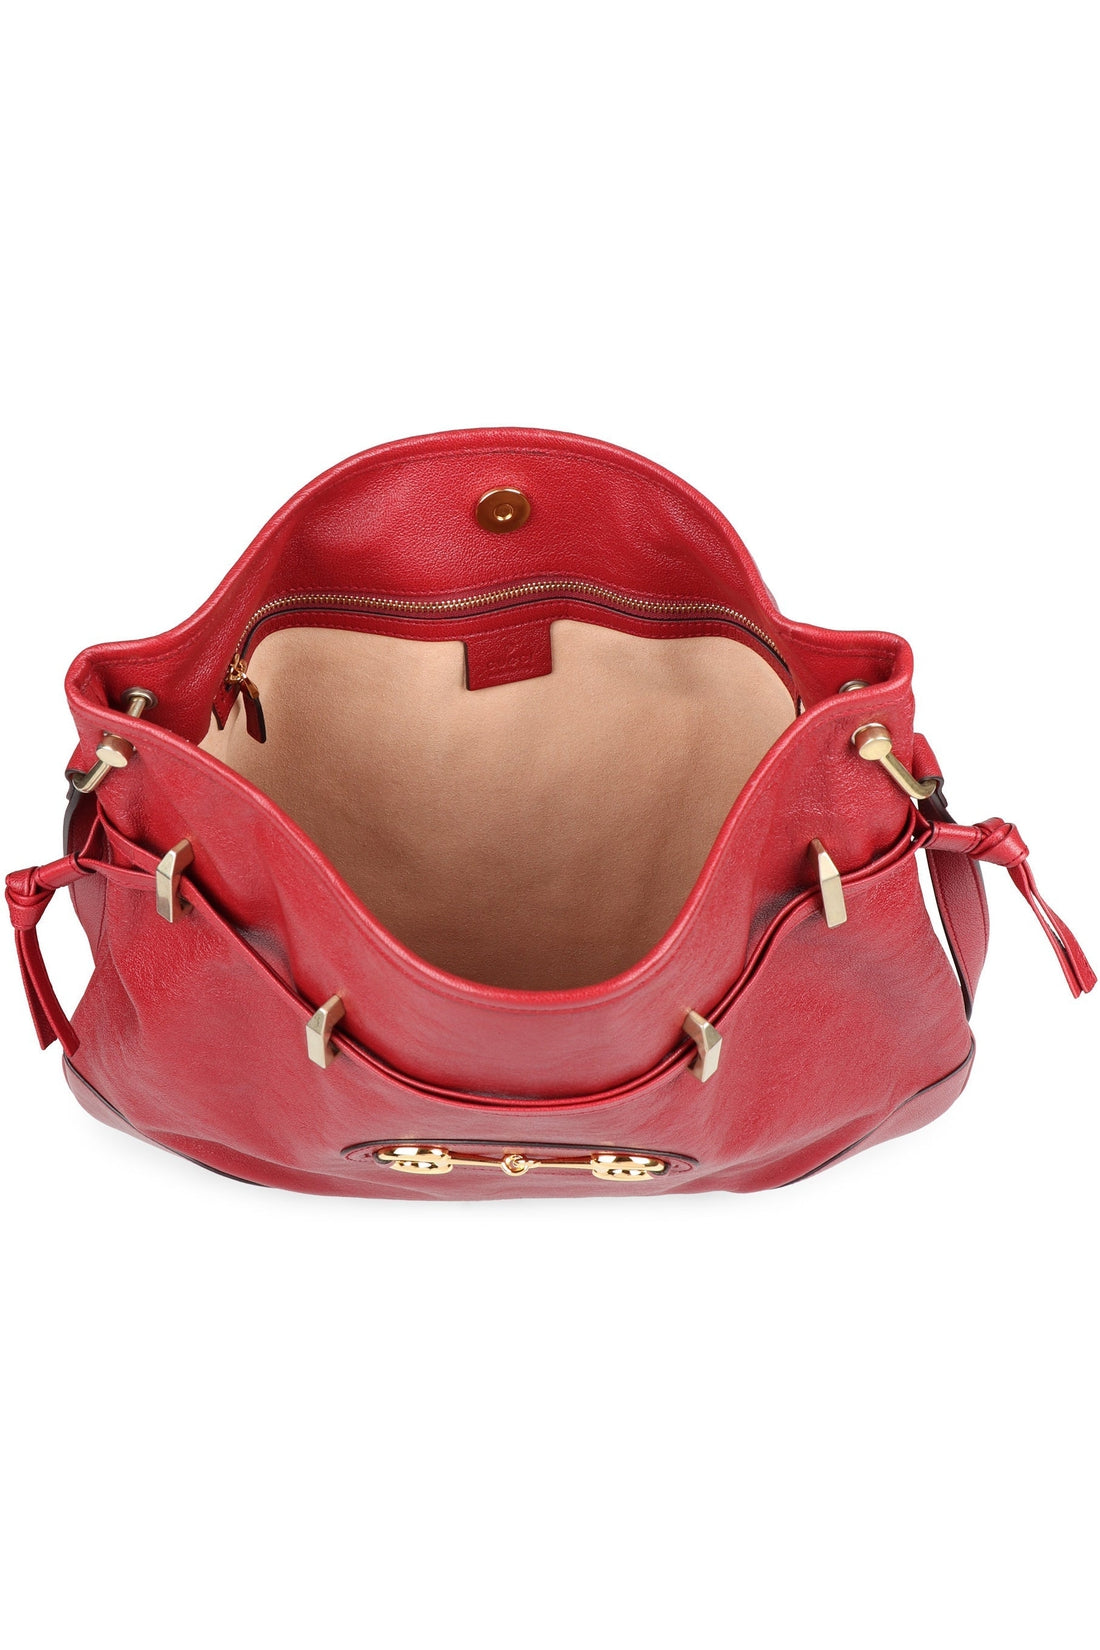 Gucci-OUTLET-SALE-Gucci 1955 Horsebit leather bag-ARCHIVIST